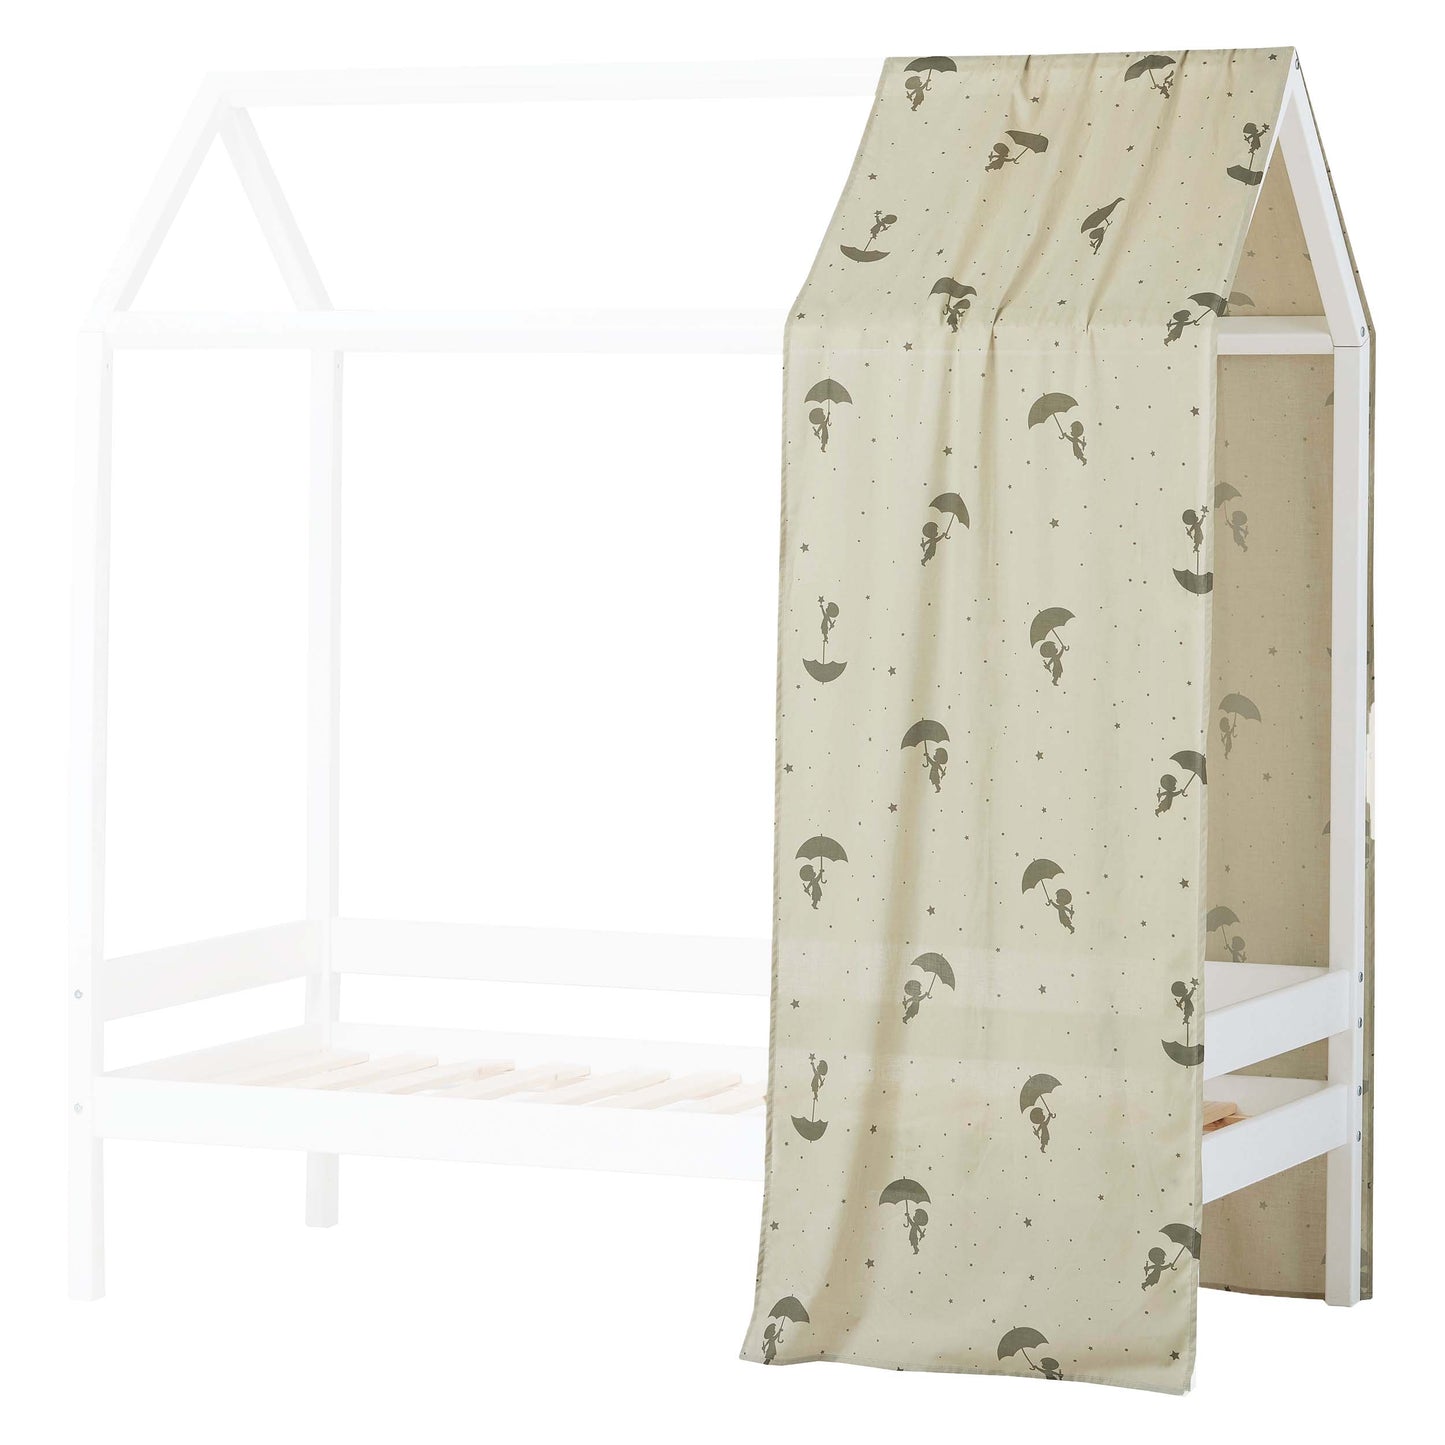 Hoppekids Eco Comfort House Bed - 70 x 160 cm